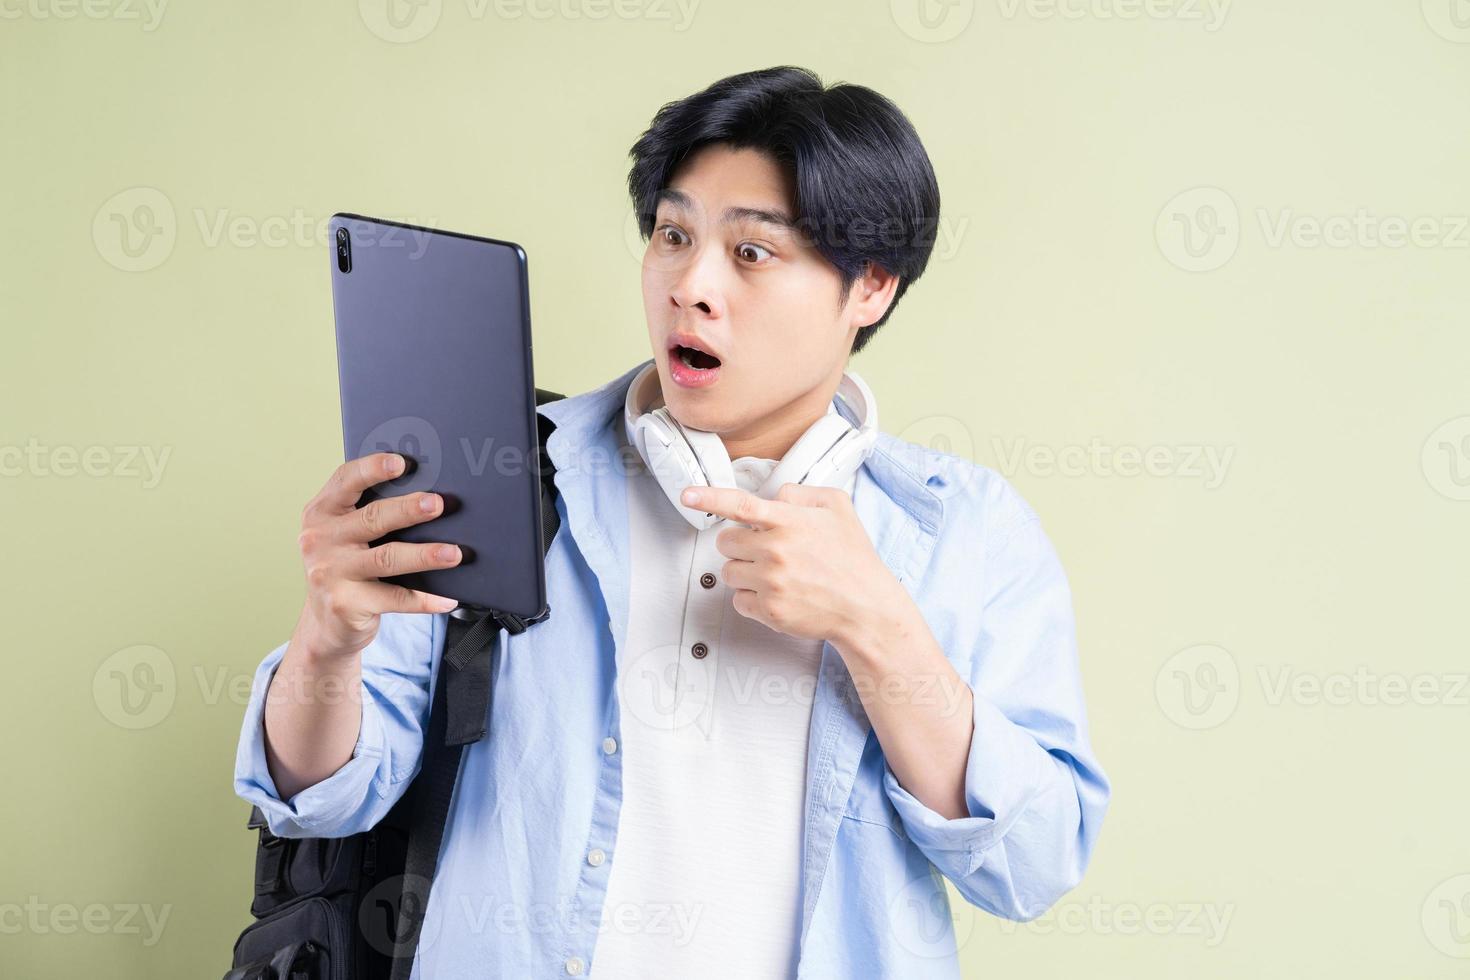 estudante asiático apontando o dedo para o tablet com uma cara de surpresa foto